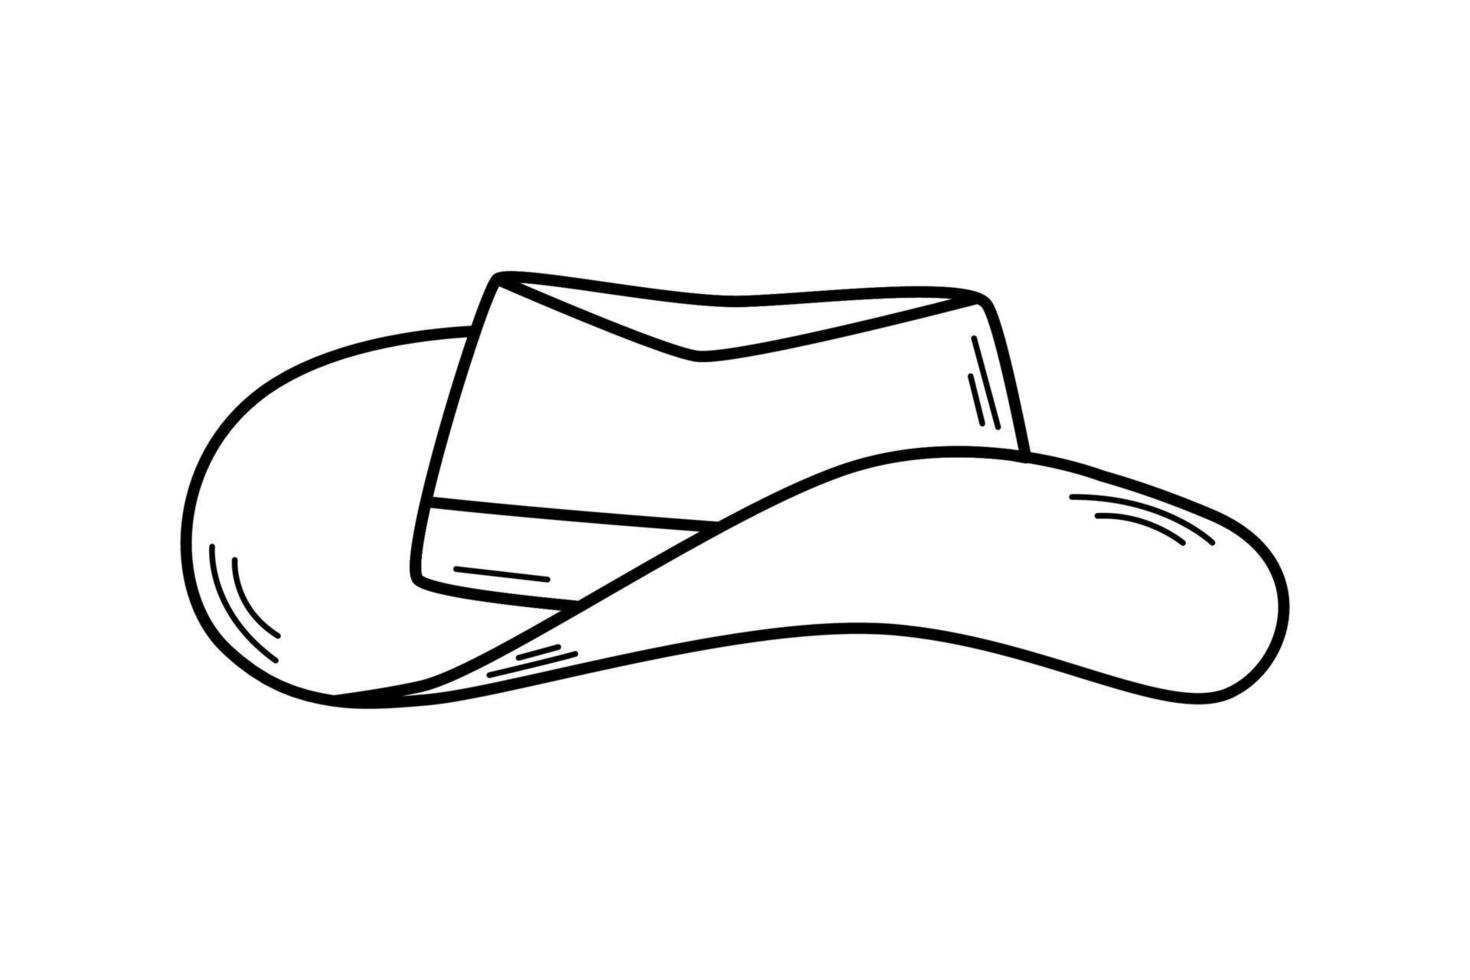 chapeau de cow-boy style doodle, illustration vectorielle d'un chapeau à bord. vecteur